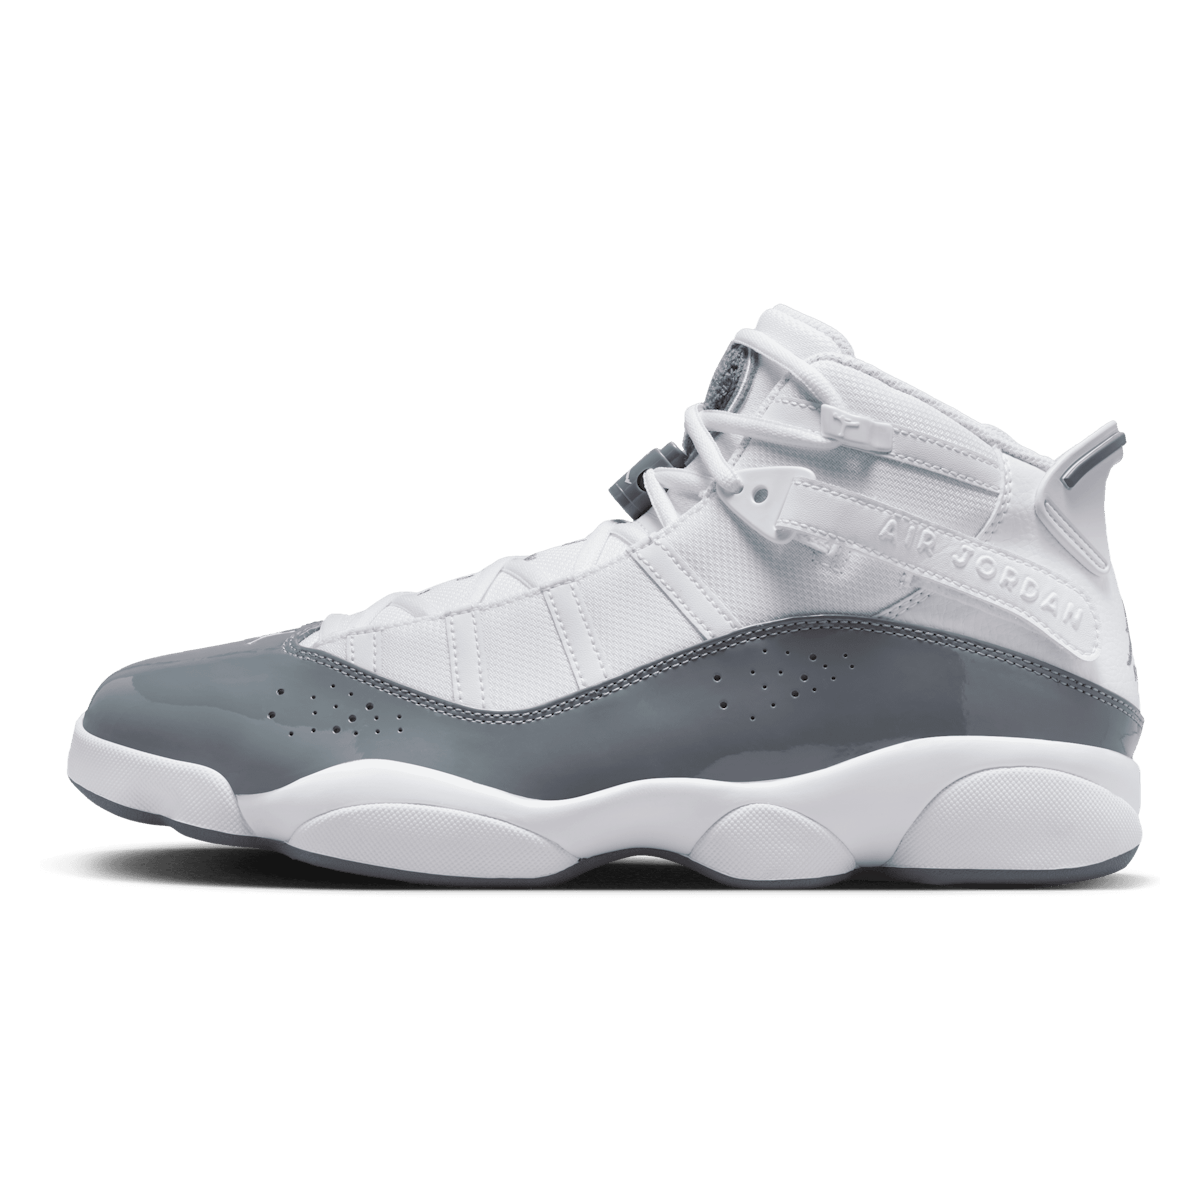 Jordan 6 Rings White Cool Grey